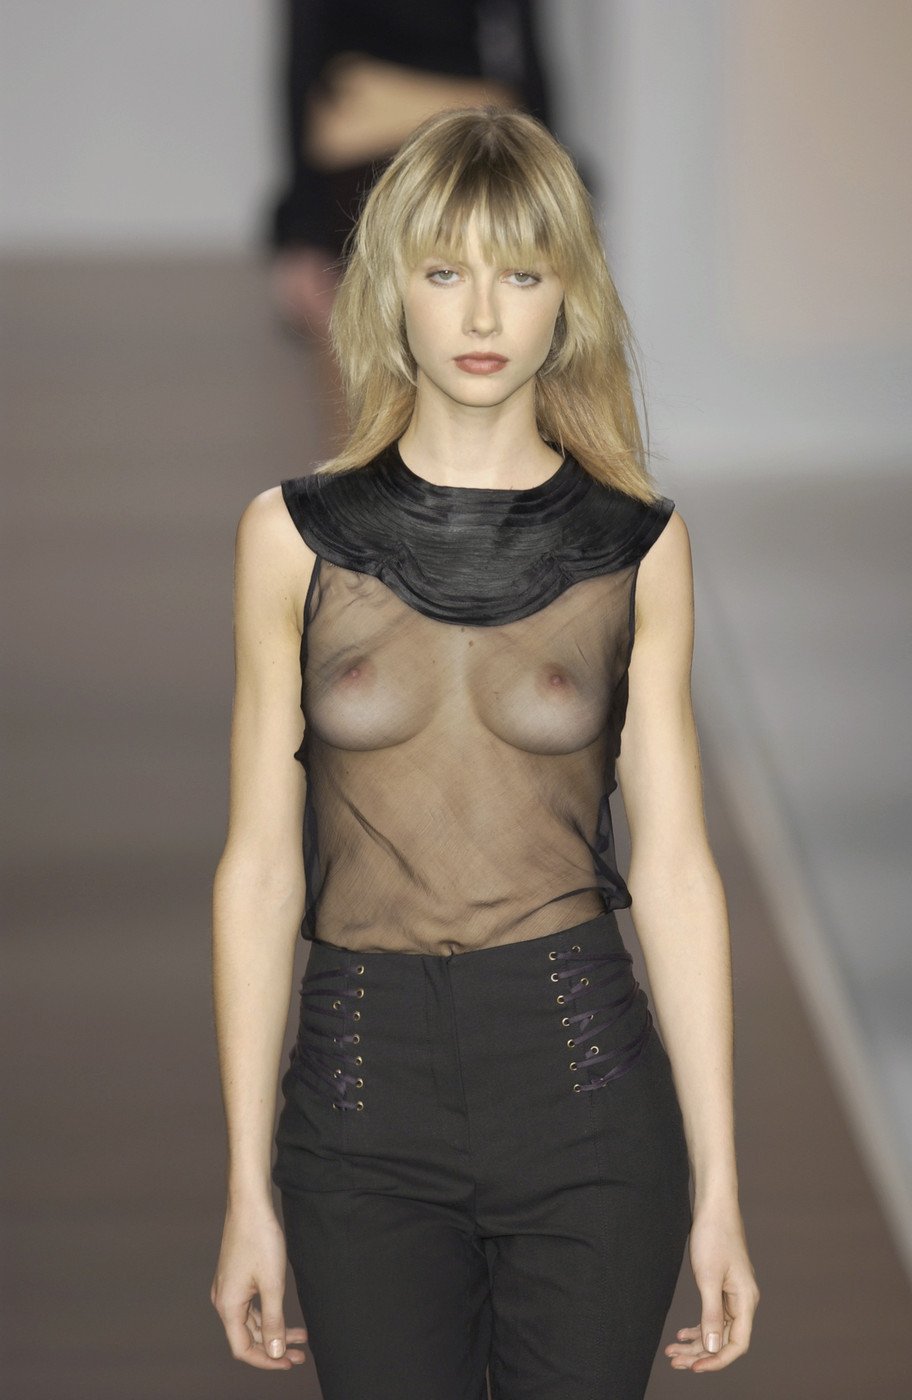 Подборка моделей с обнаженной грудью 12 фотография